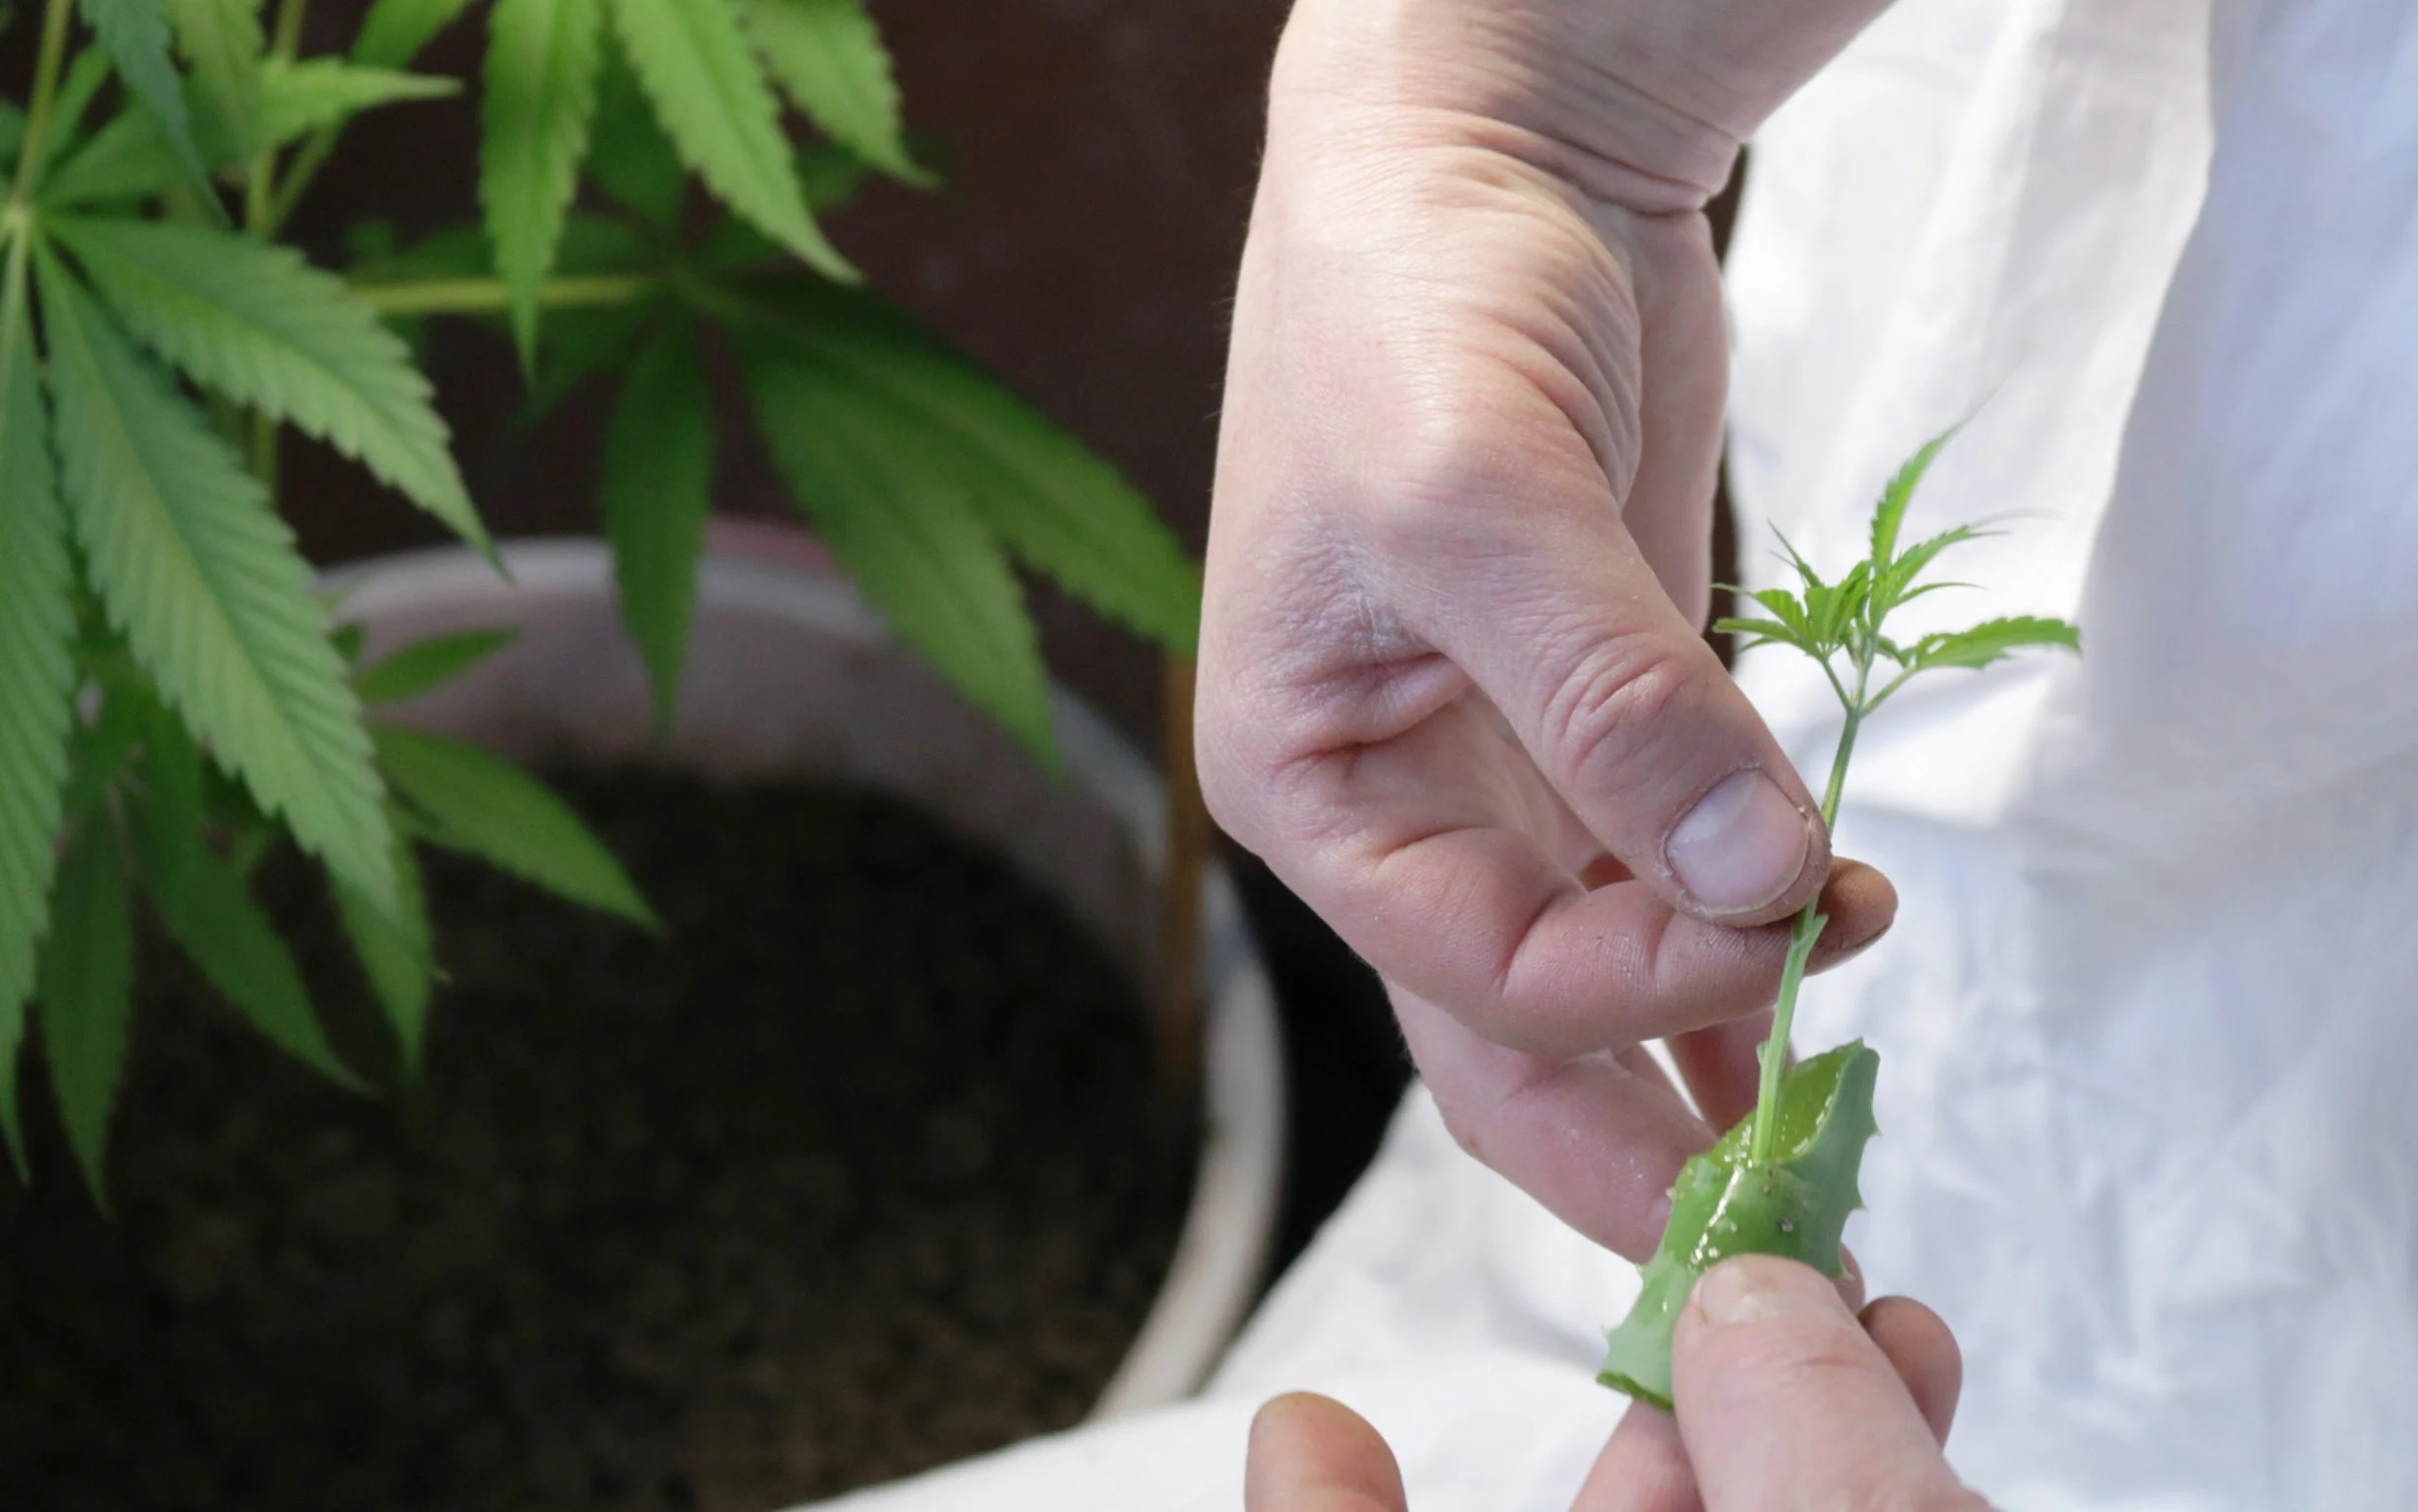 Why Are Marijuana Plants Cloned?